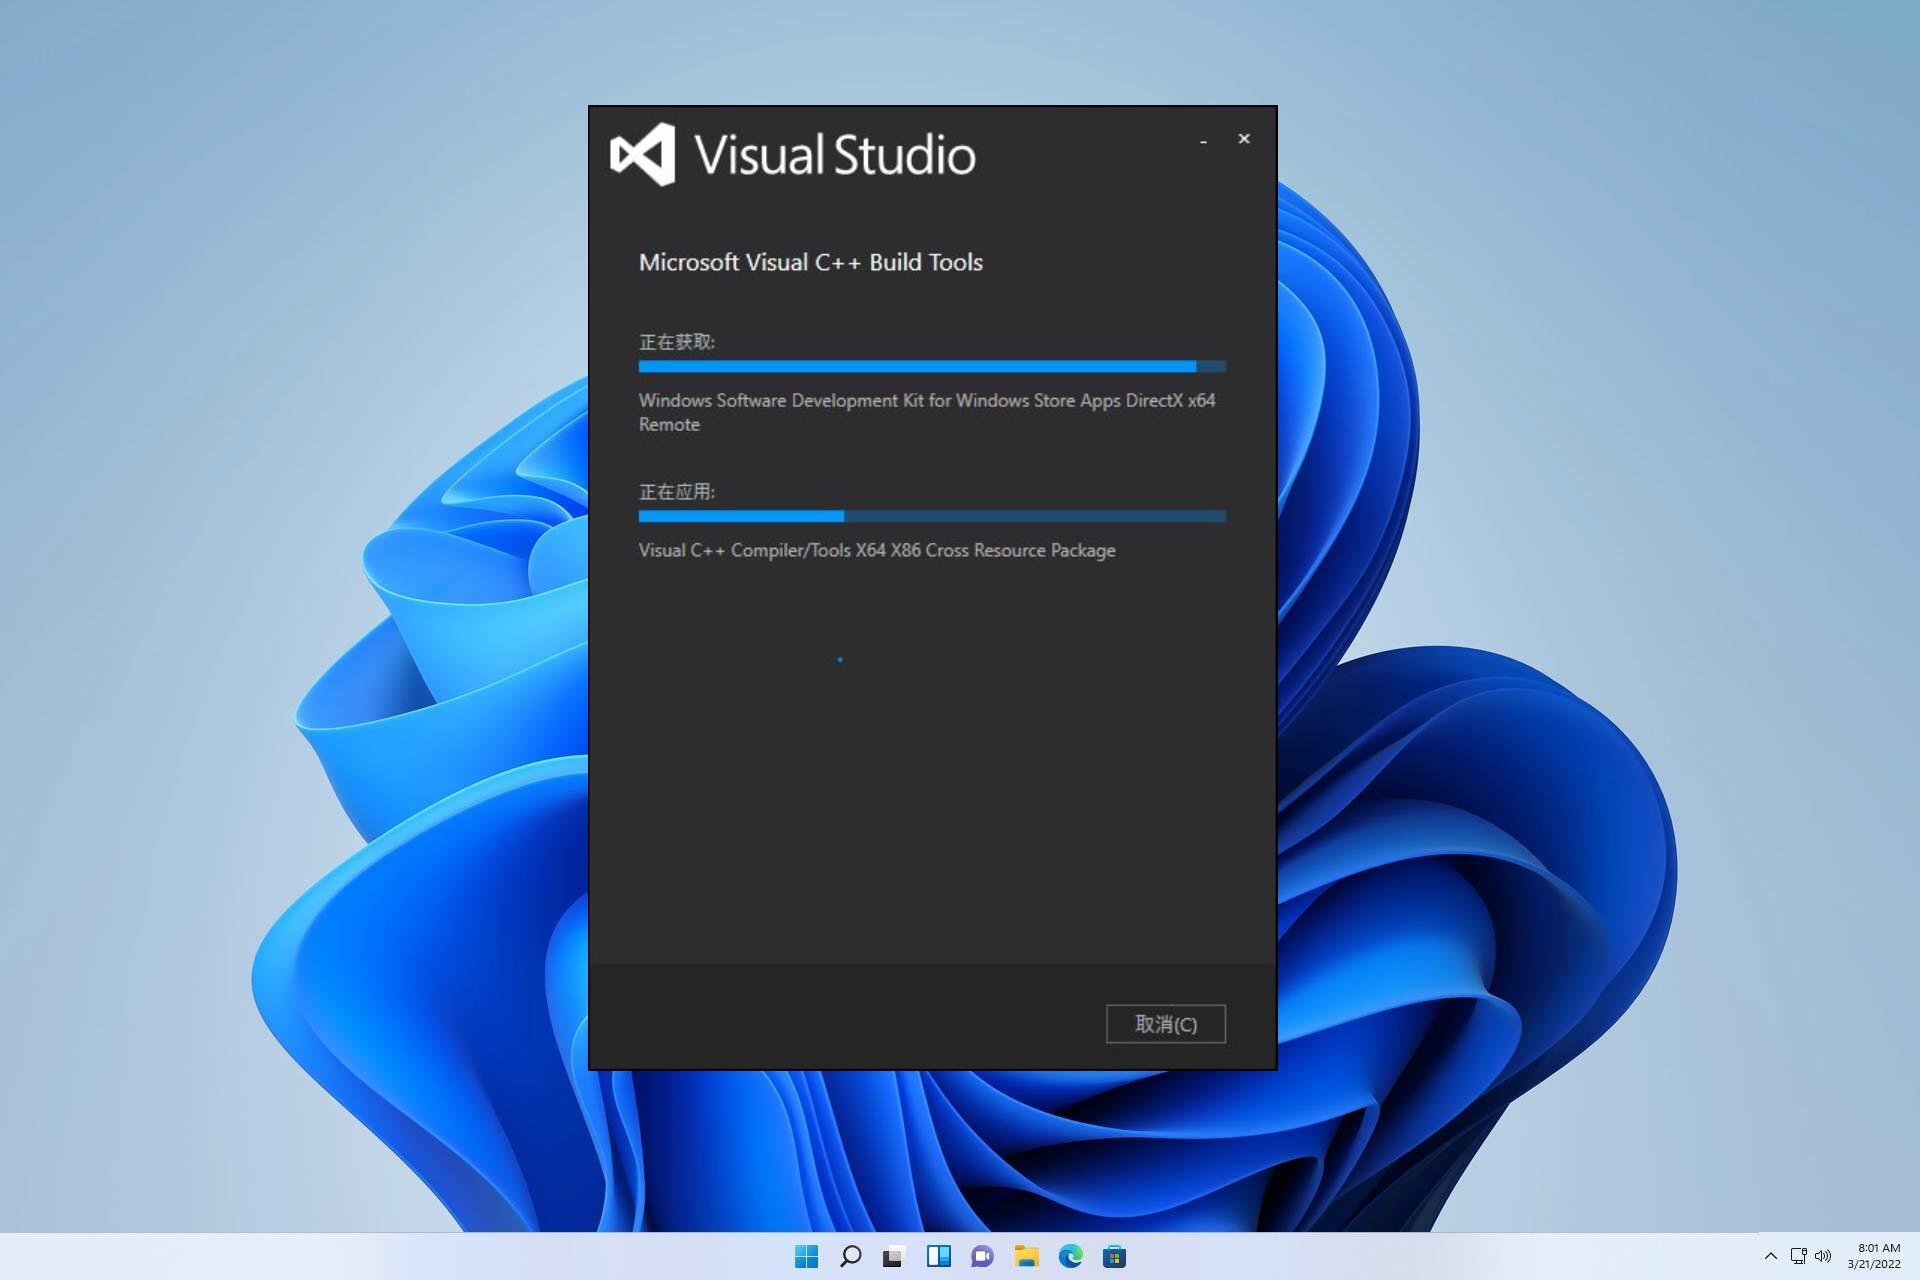 Lösning: Microsoft Visual C++ 14.0 eller högre krävs